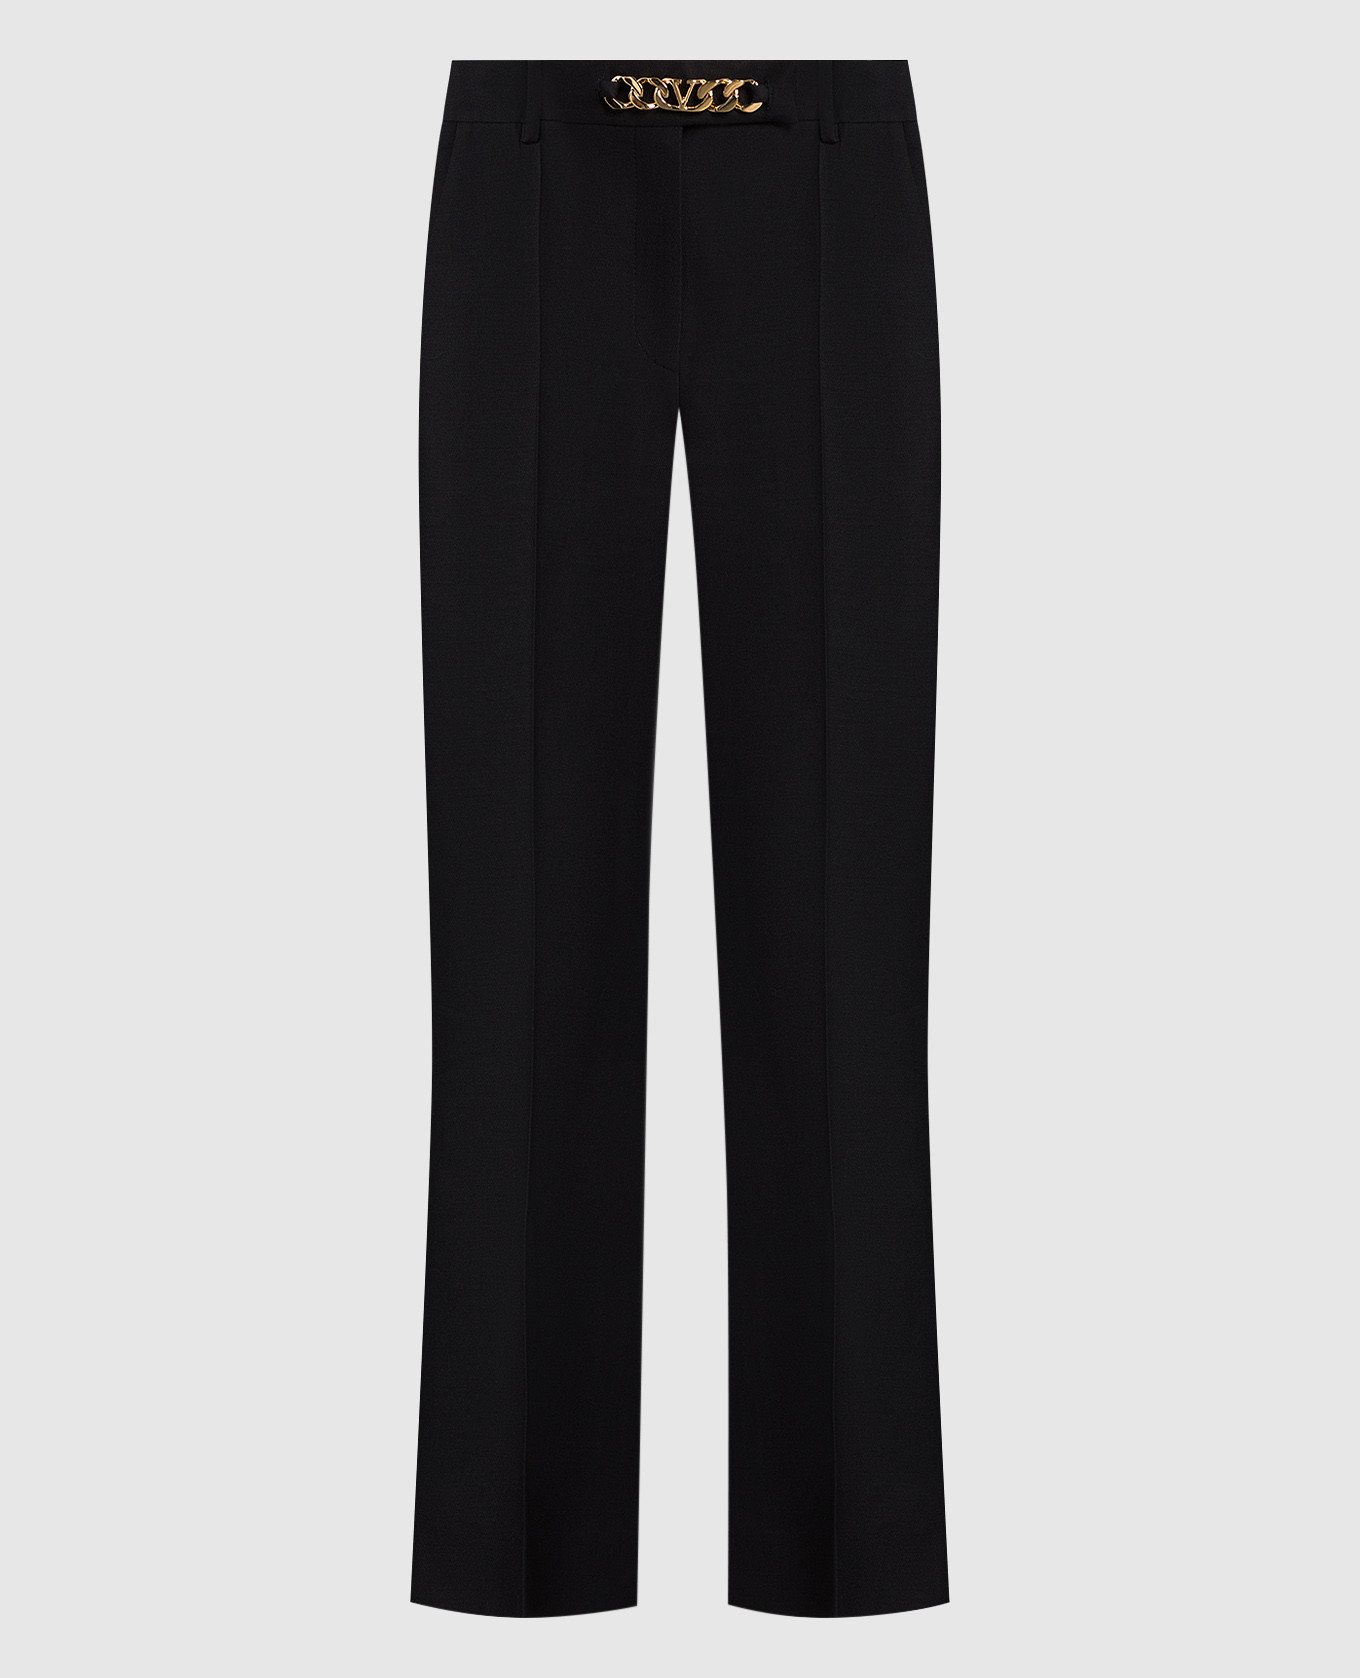 Черные брюки из шерсти и шелка с цепью VLogo